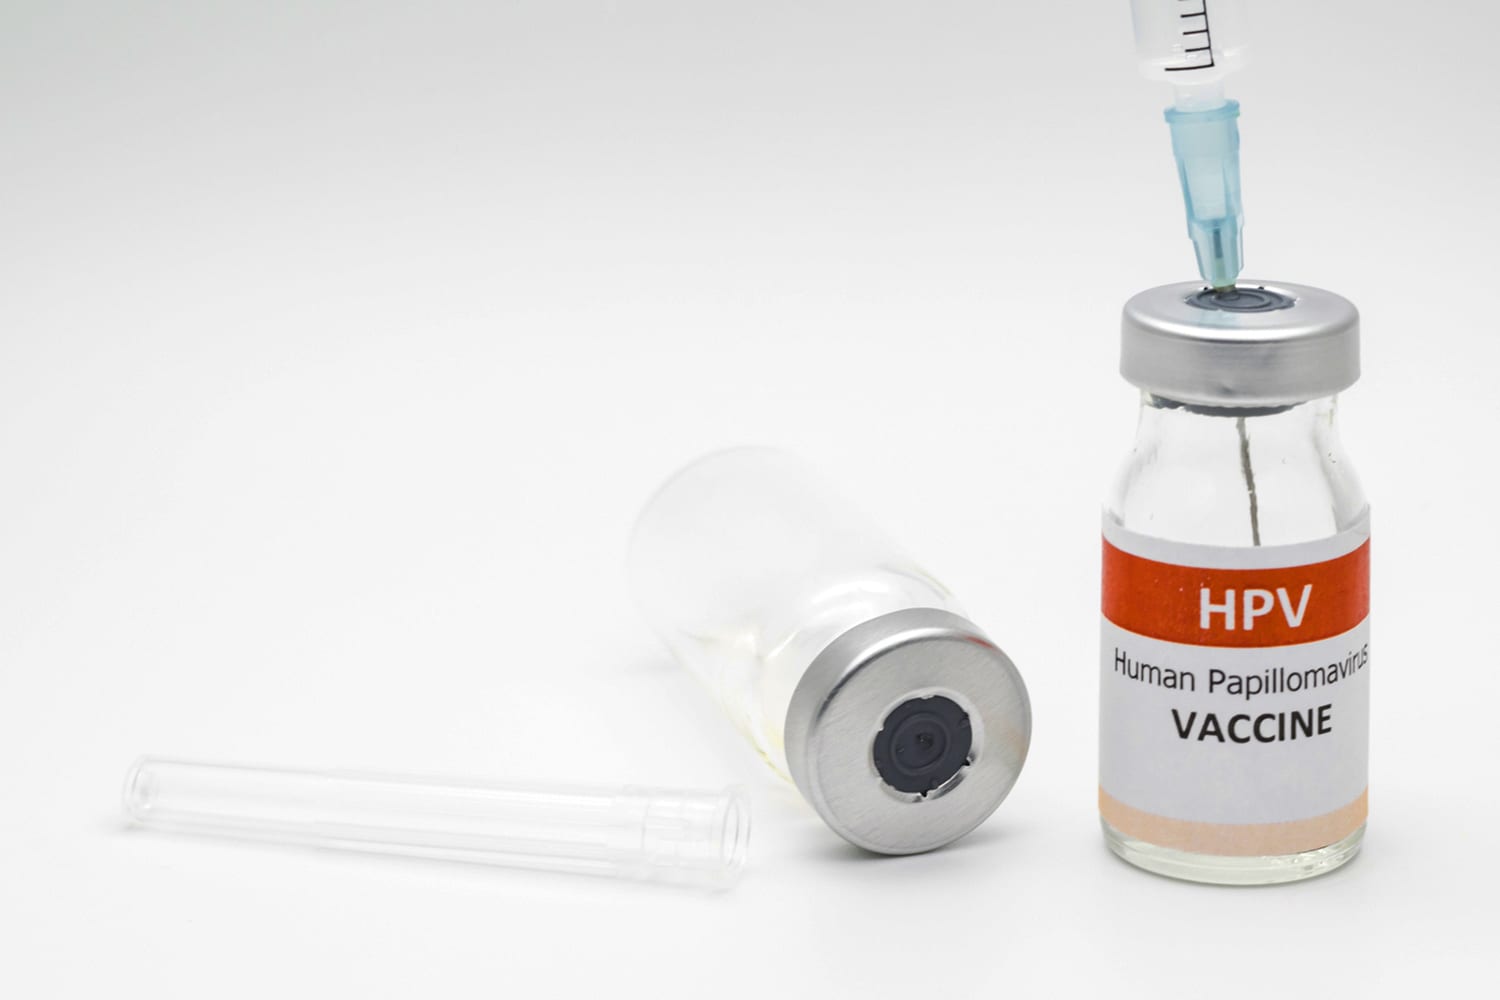 HPV- O que é, tratamentos, cuidados, diagnósticos e prevenção